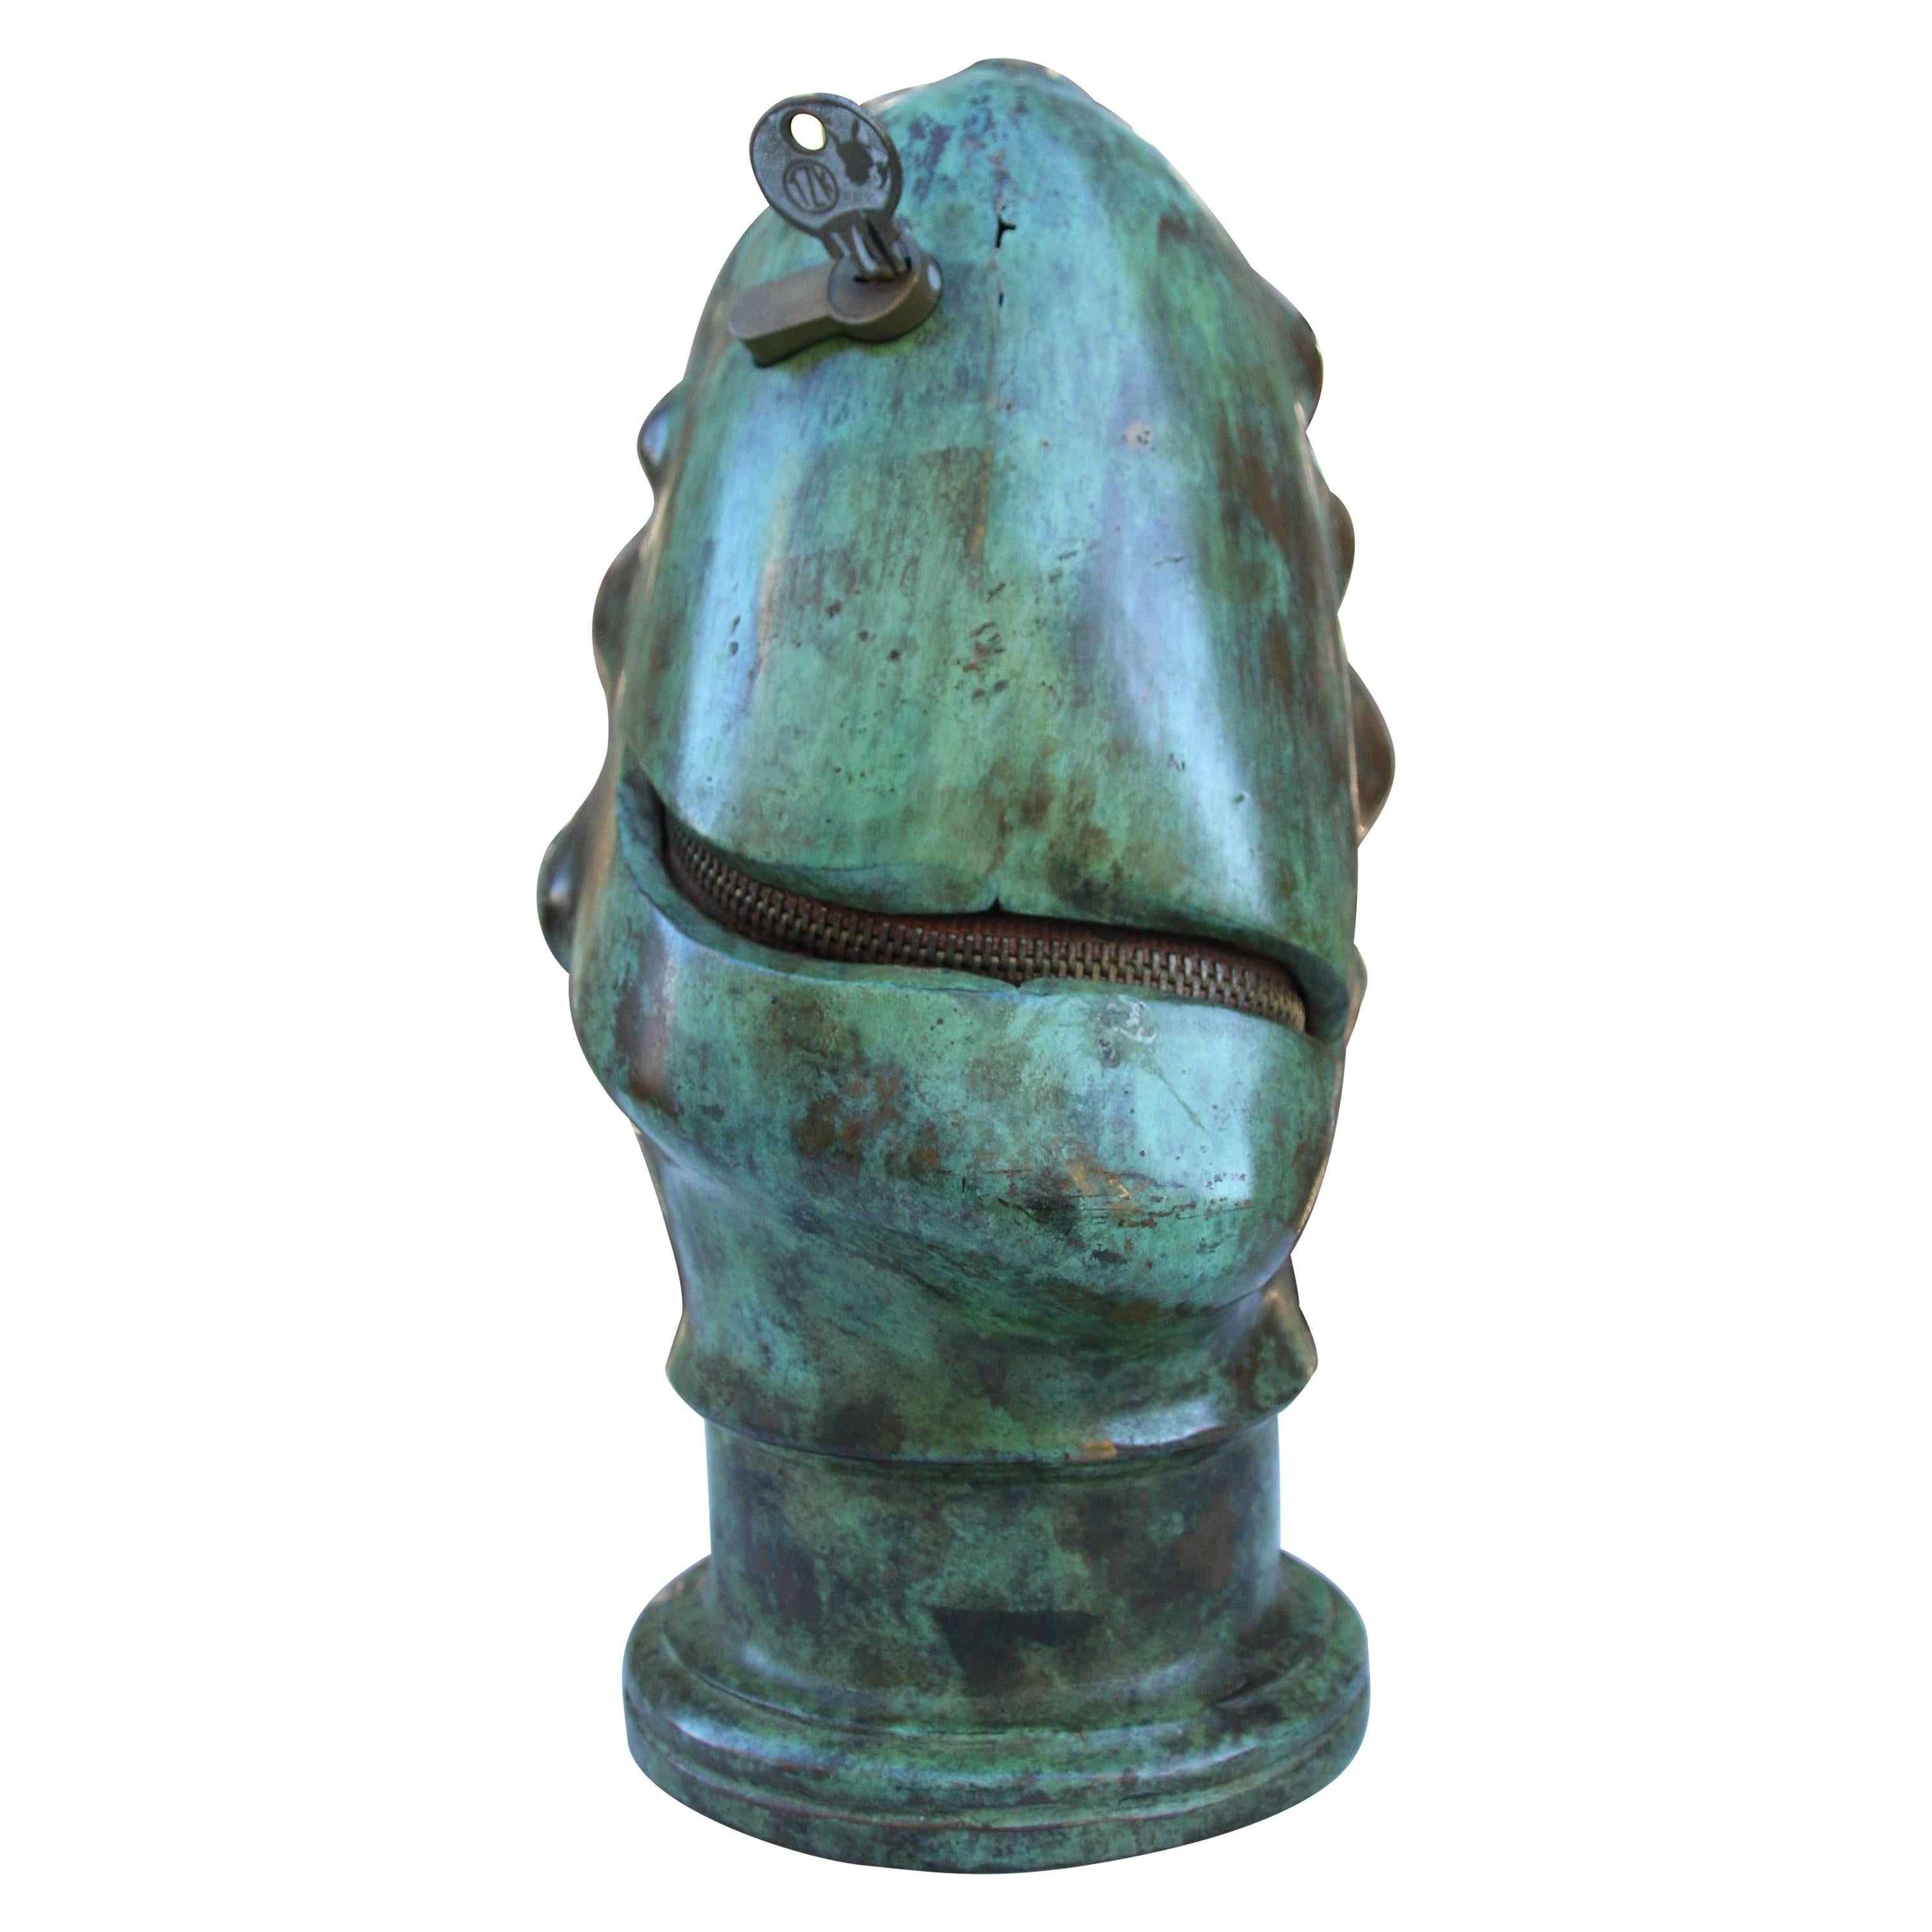 Bronze Sculpture "Zippered face"